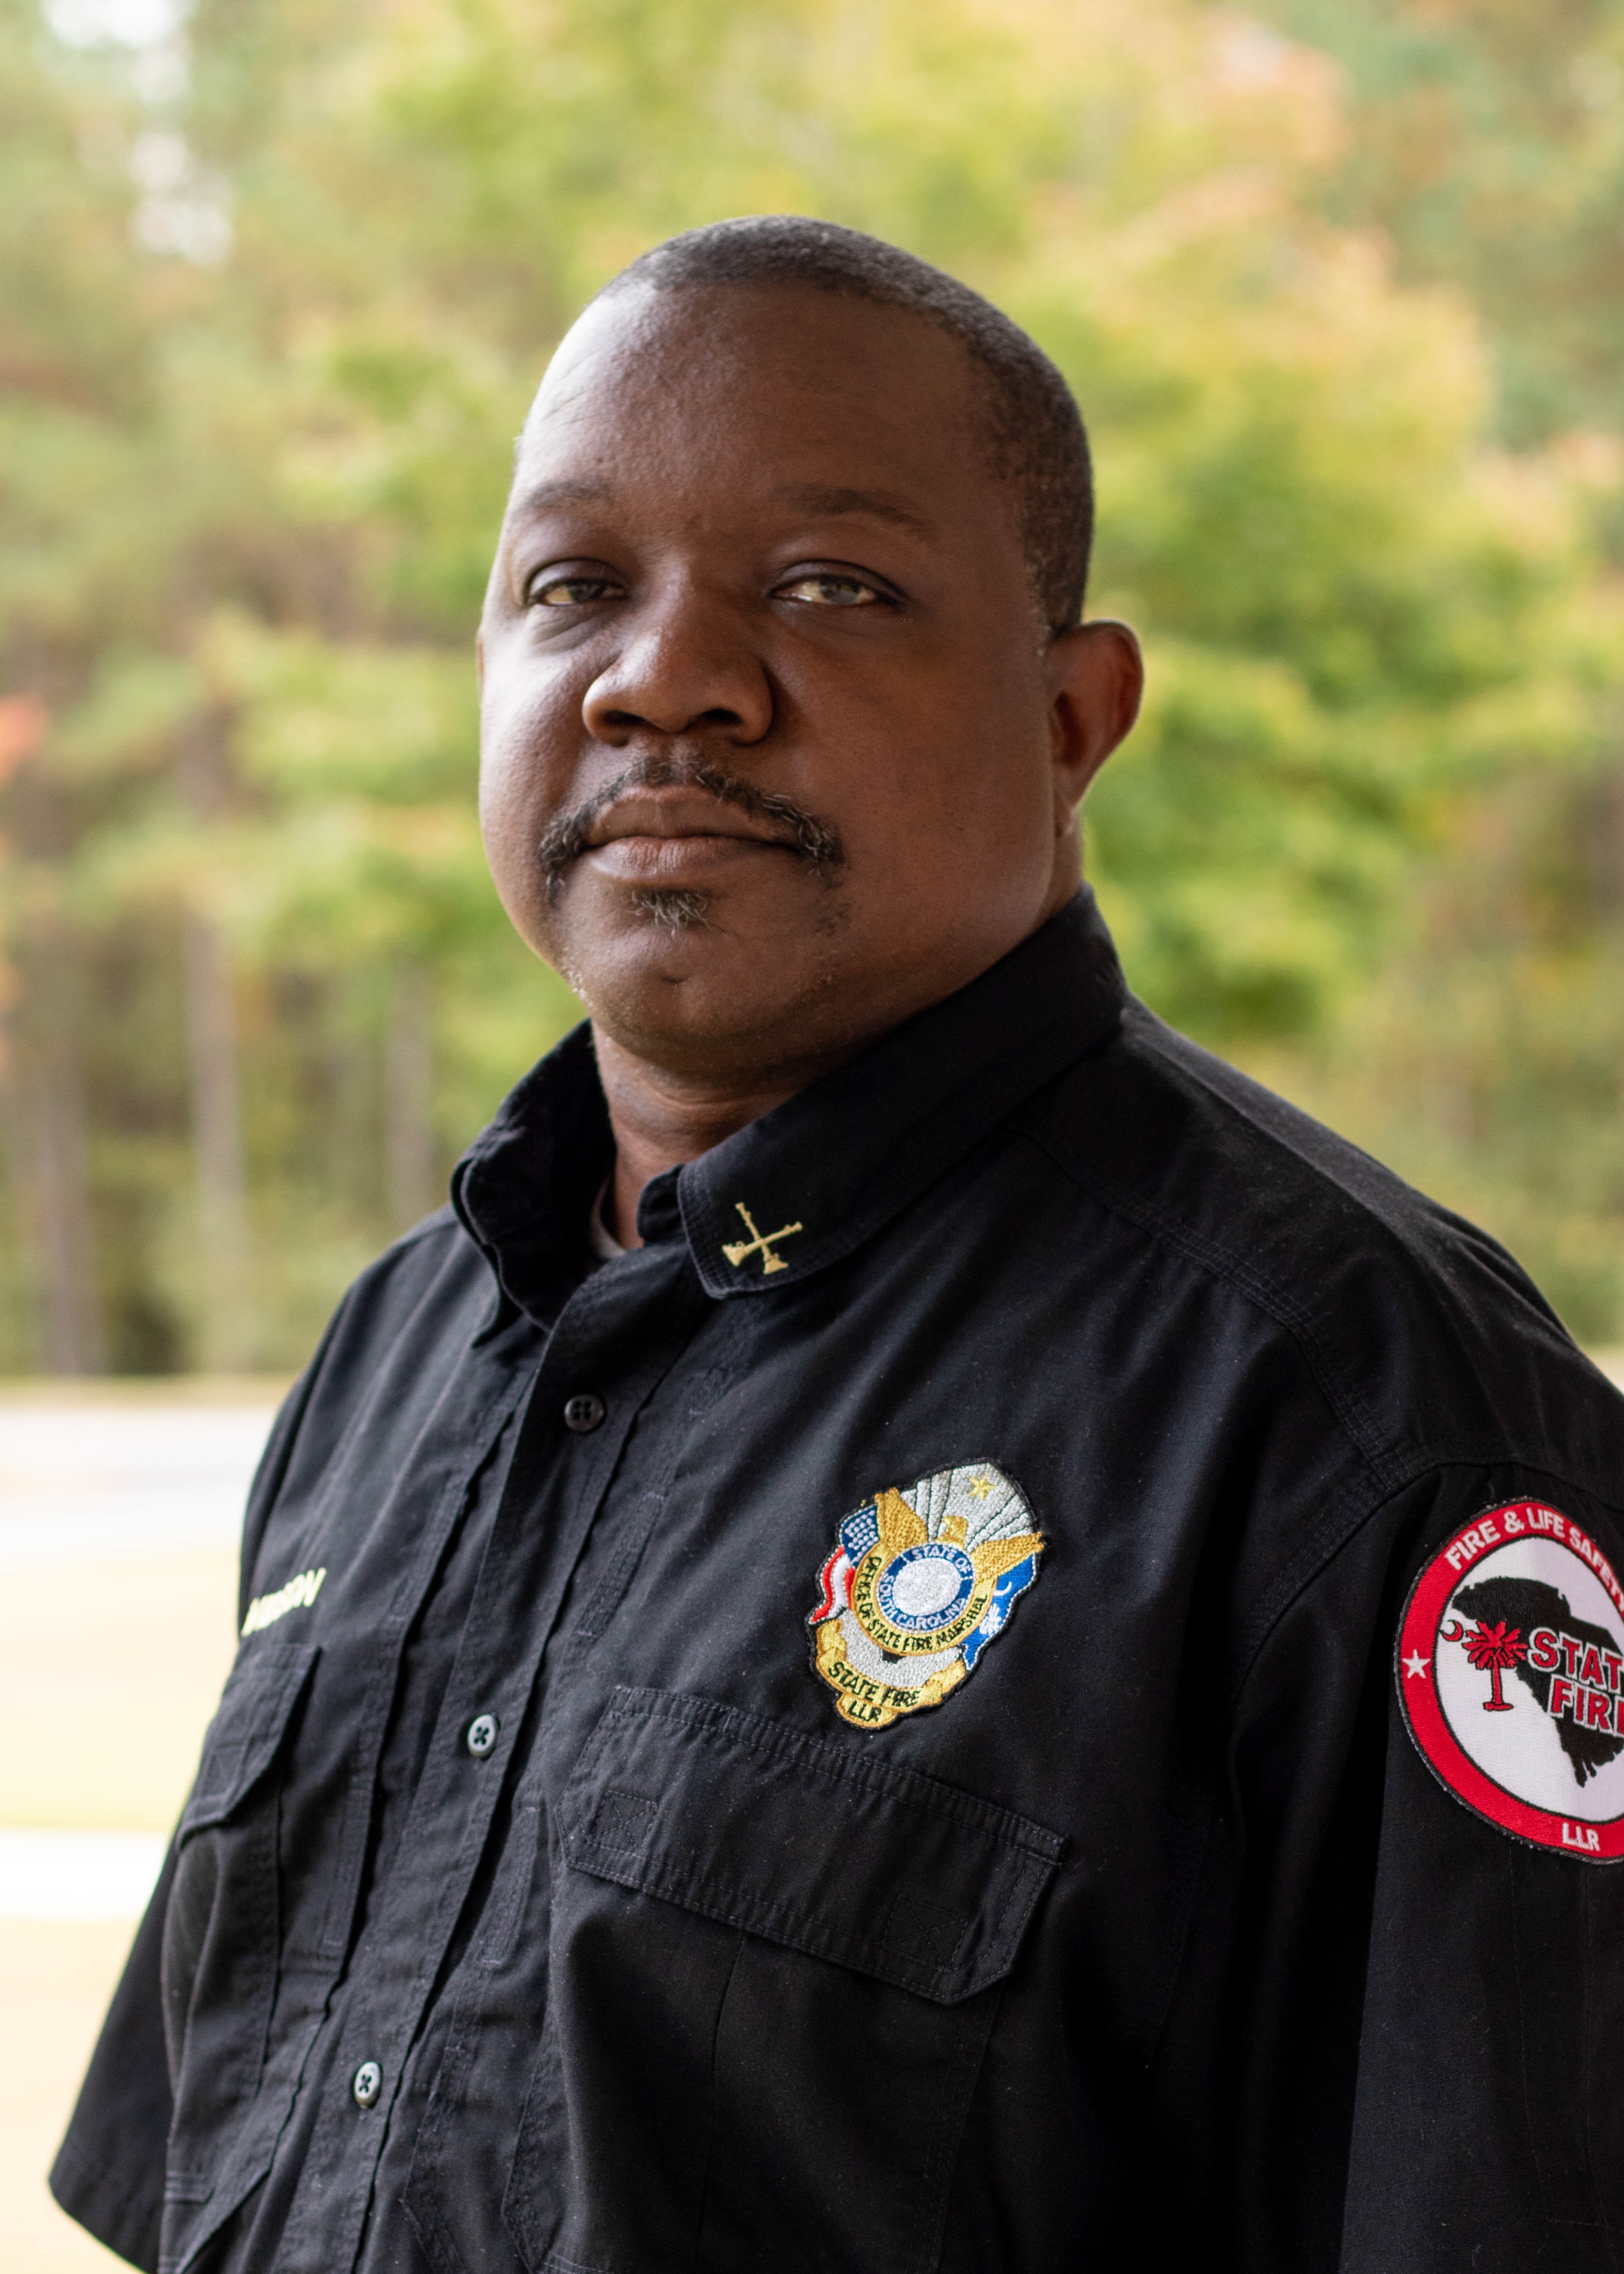 Troy Davidson, Senior Deputy Fire Marshal